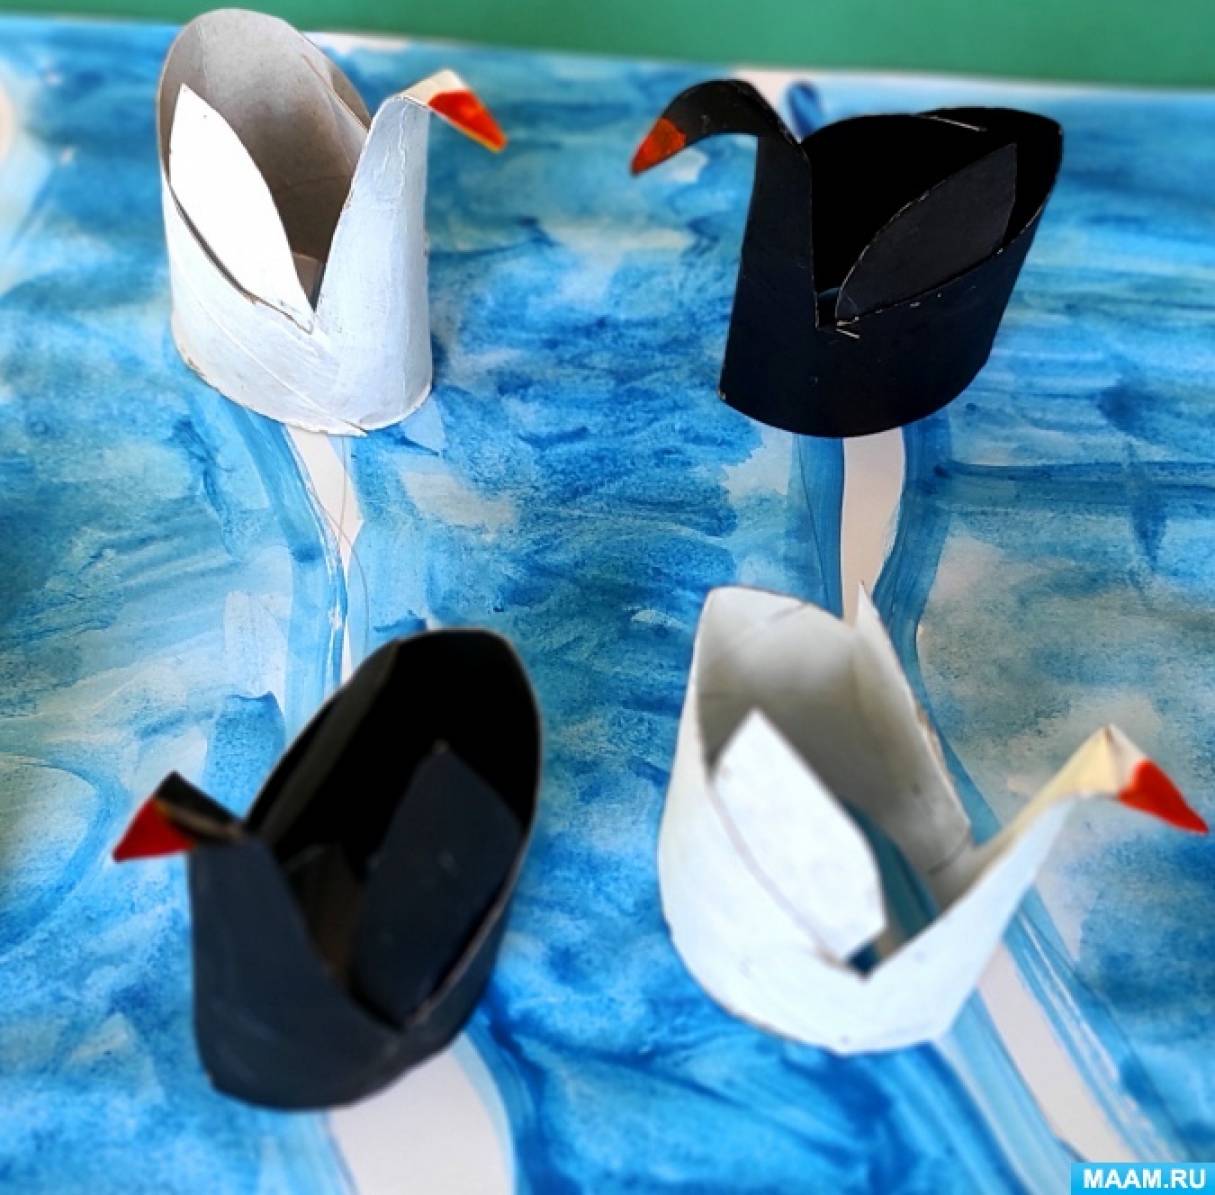 Мастер-класс для детей по изготовлению поделки из втулки от туалетной бумаги «Лебедь»